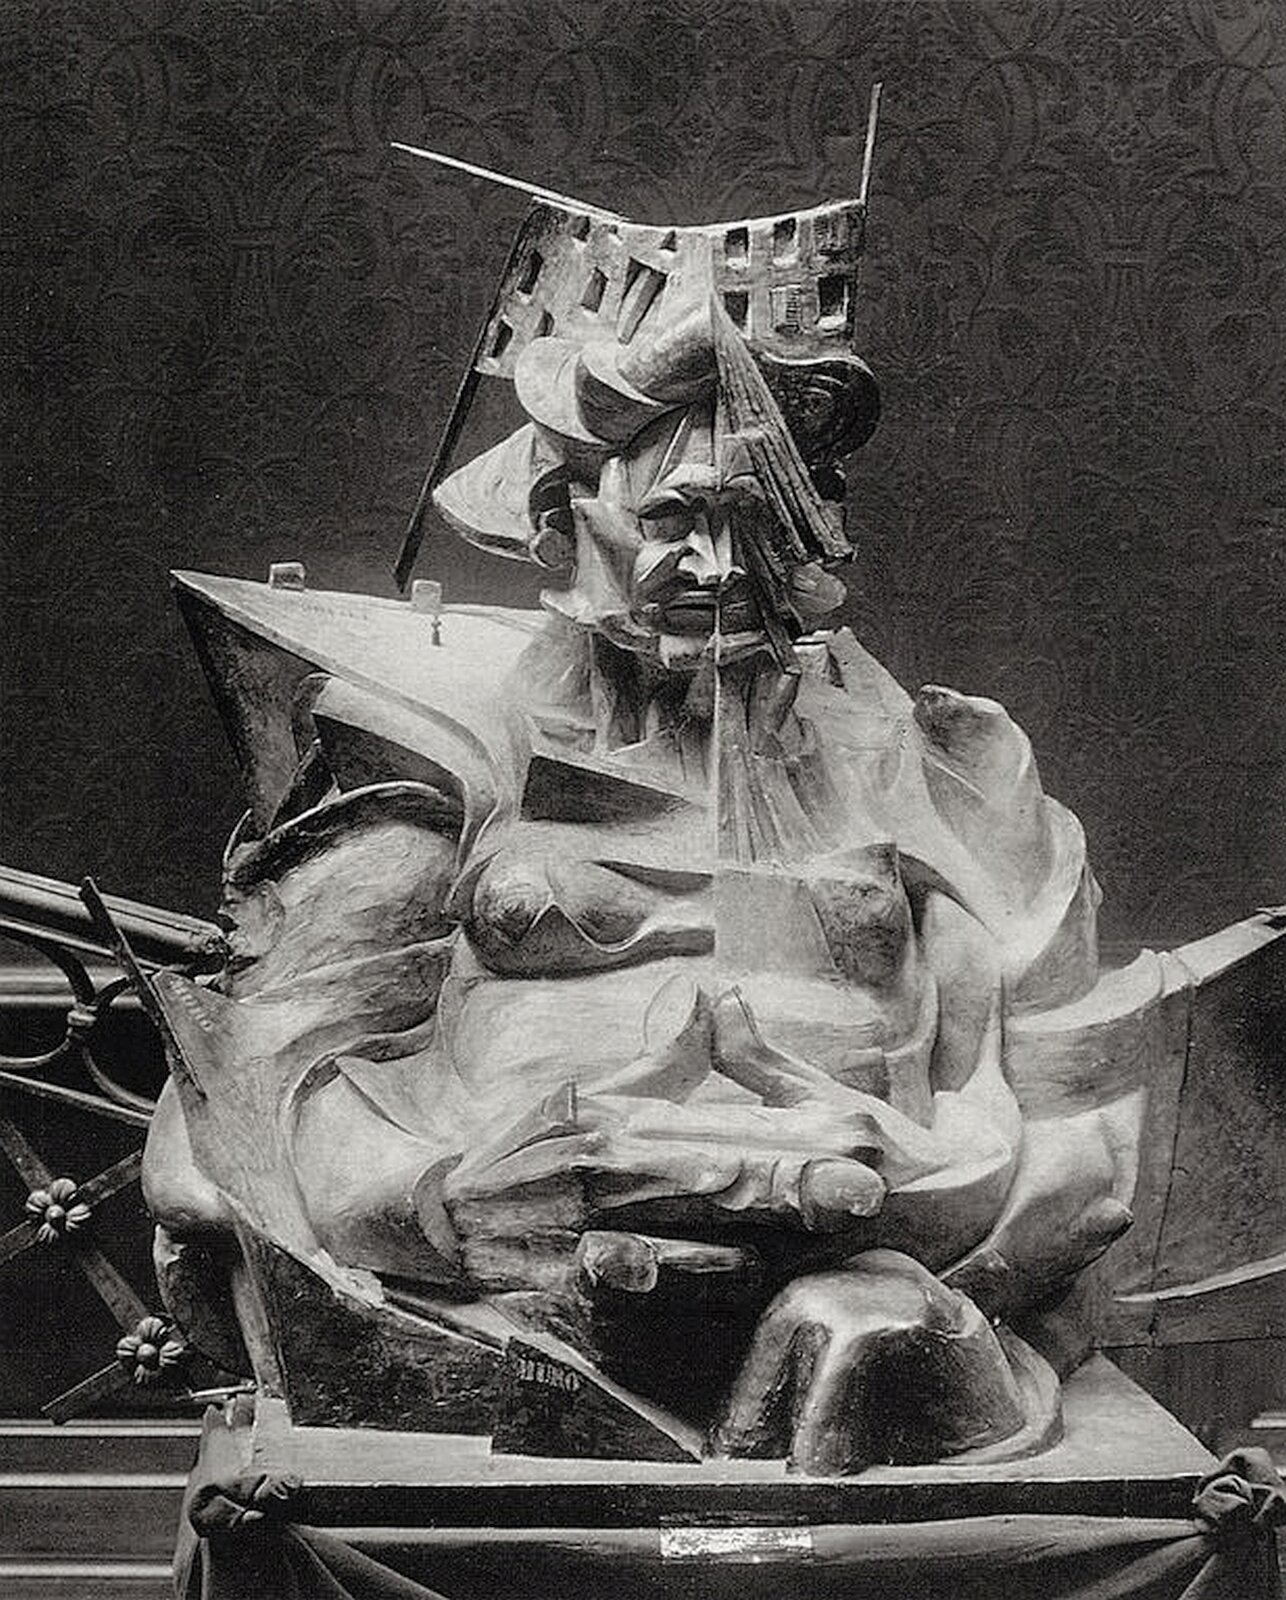 Ilustracja przedstawia rzeźbę Umberta Boccioniego „Głowa + dom + światło”. Ukazuje posąg zdeformowanego człowieka, ujętego od głowy do pasa, połączonego z usytuowanymi pod różnymi kątami płaszczyznami oraz zespolonego z obiektami. Wprowadza to efekty światłocieniowe. Postać na głowie ma dołączony fragment budynku z oknami. Z prawego ramienia wychodzi ostro zakończony fragment powierzchni płaskiej. Abstrakcyjne konstrukcje dołączone są do całej postaci. Mimika człowieka wskazuje na srogość. Z przodu mężczyzna ma zaplecione duże, masywne dłonie.  Rzeźba ustawiona jest na kwadratowej płycie.